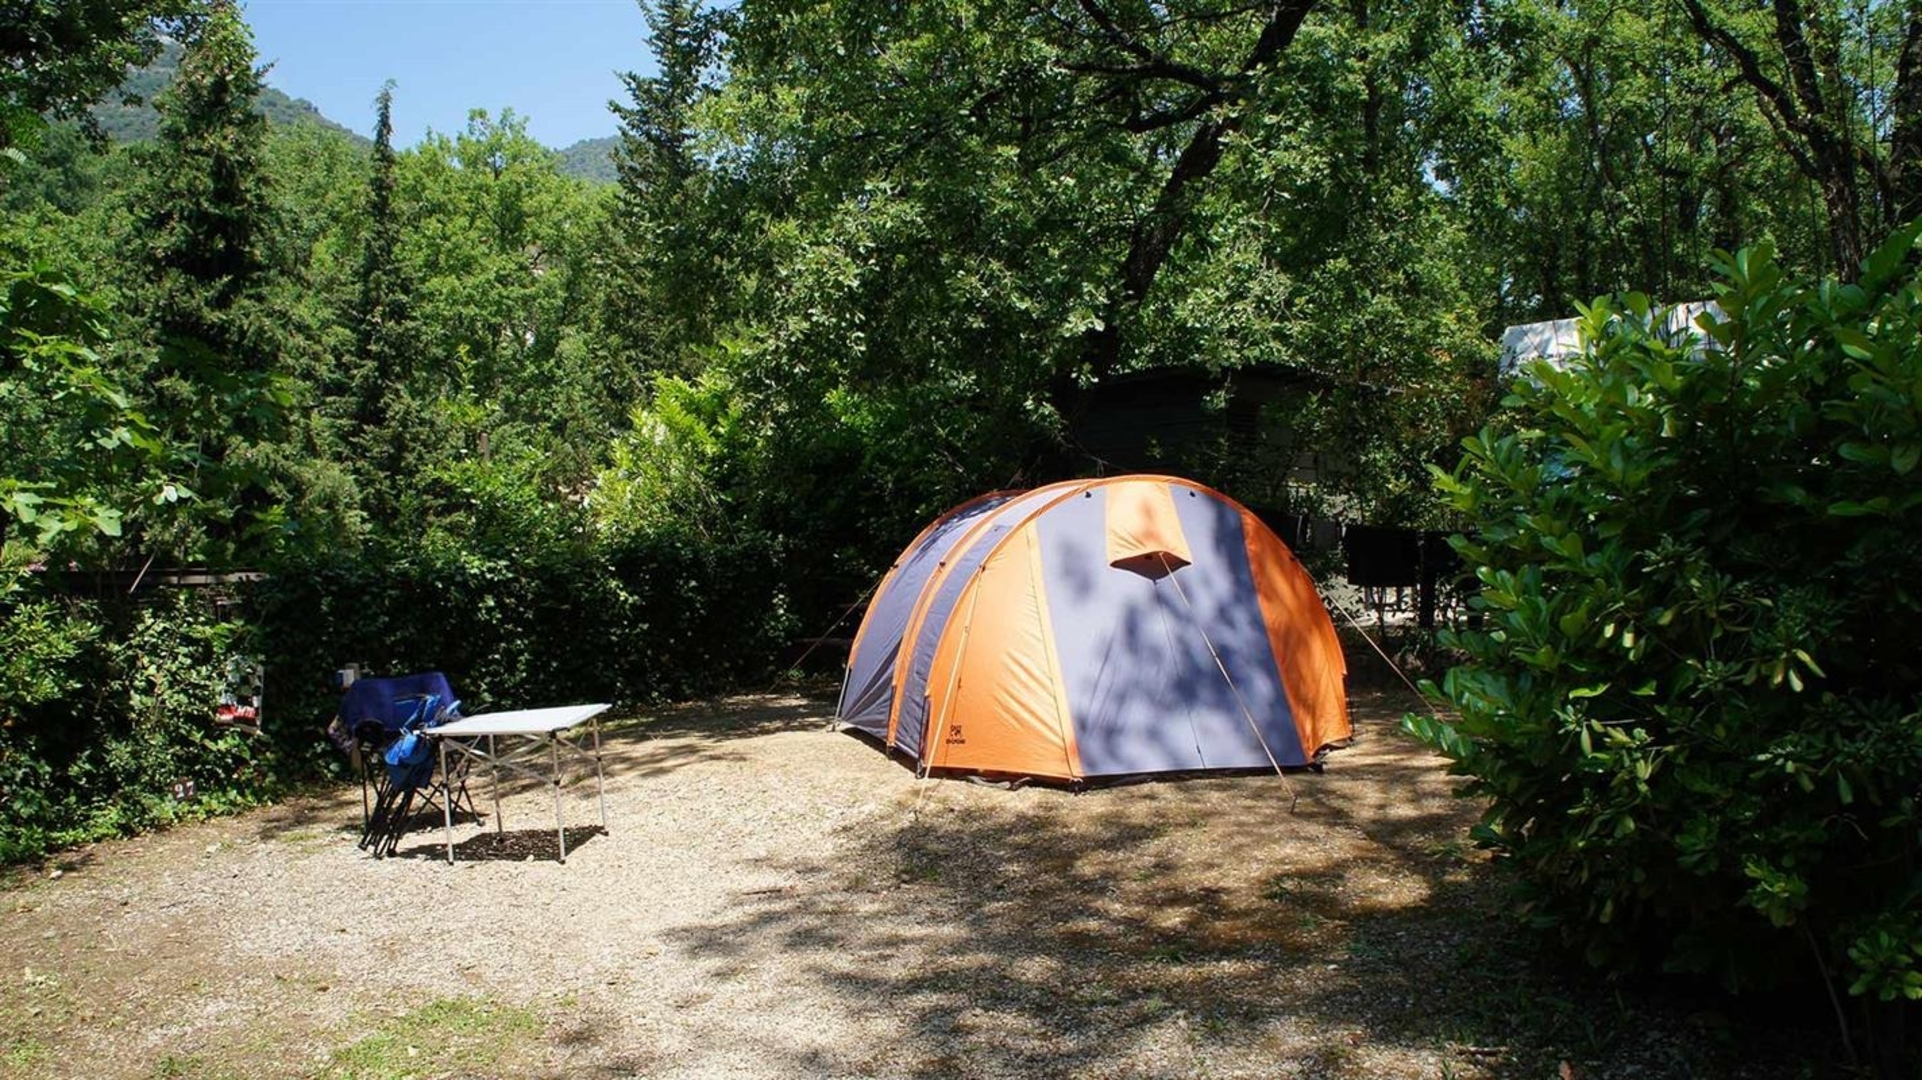 Forløber Sammentræf Mount Vesuv Stille campingplads mellem hav og bjerge i Provence-Alpes-Côte d'Azur